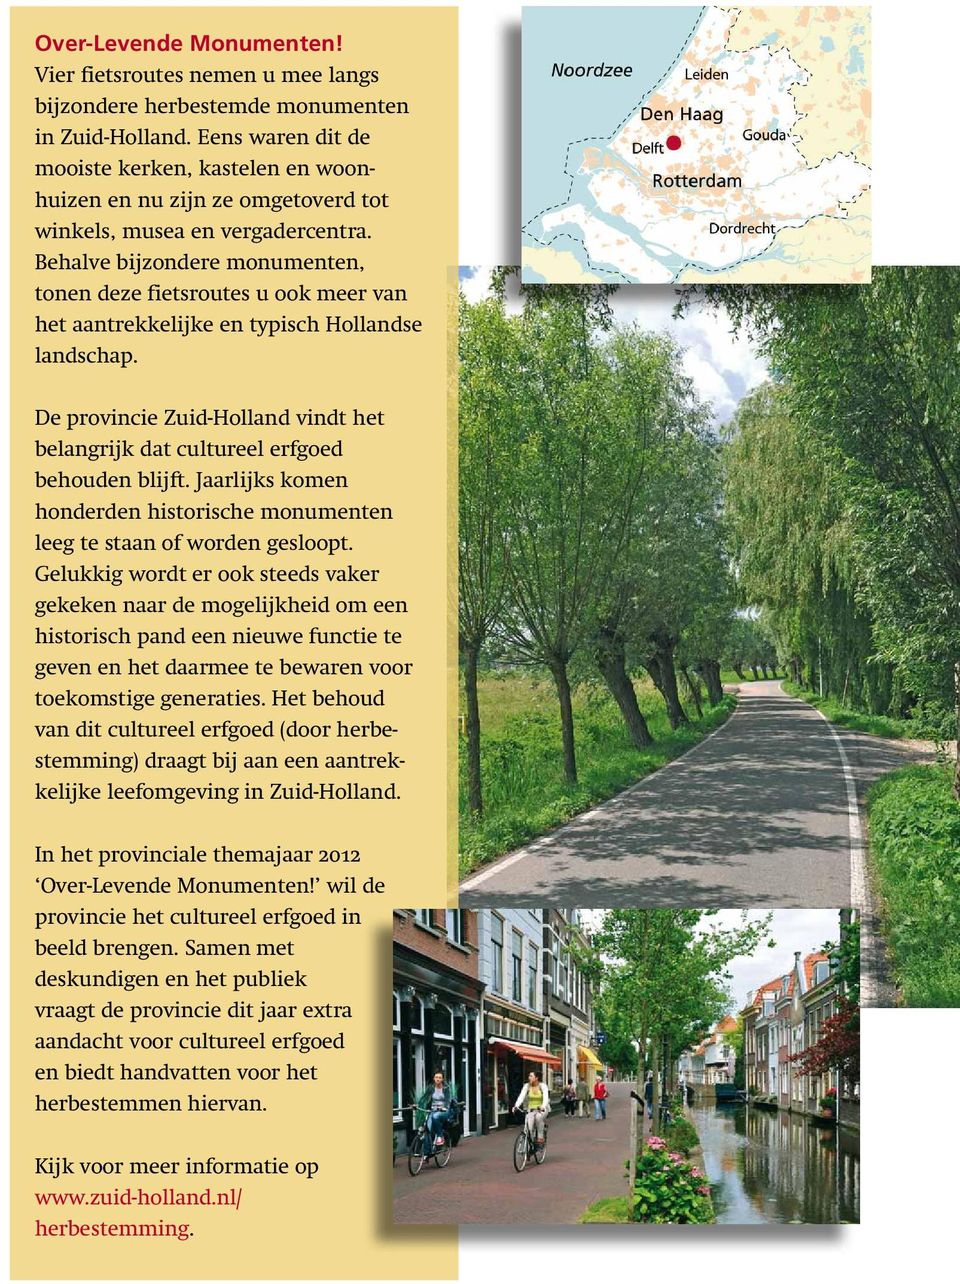 Behalve bijzondere monumenten, tonen deze fietsroutes u ook meer van het aantrekkelijke en typisch Hollandse landschap.